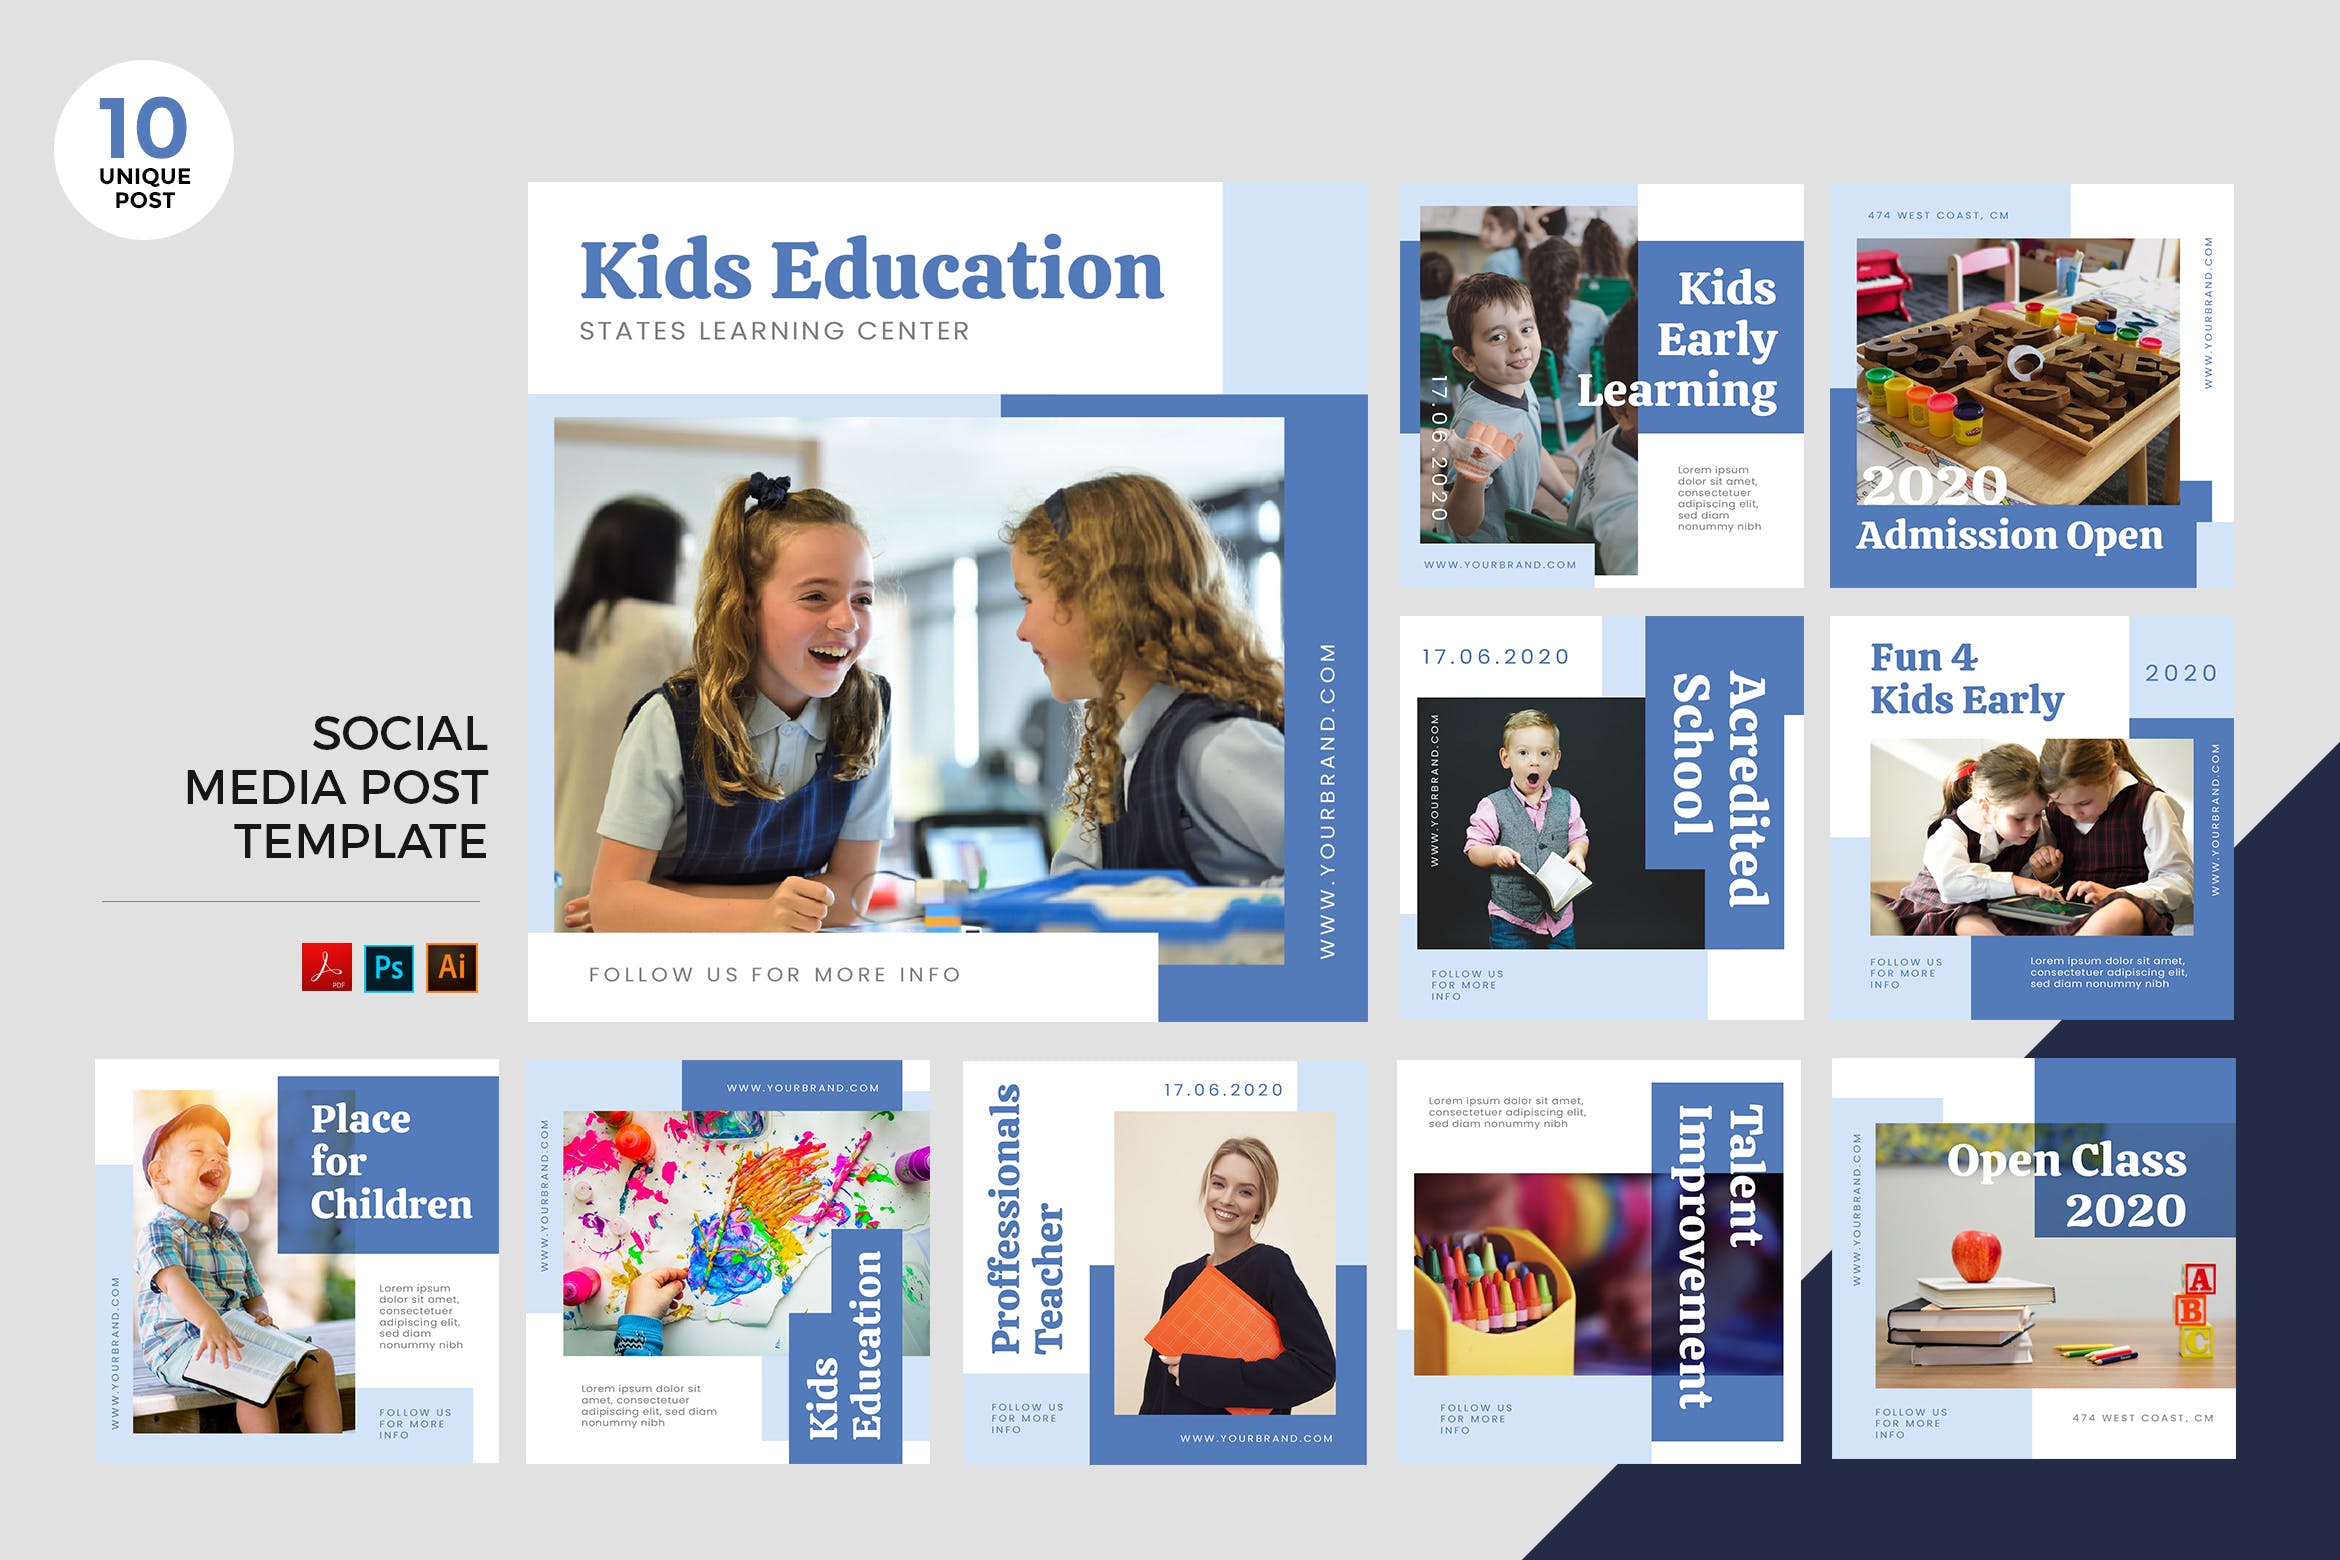 儿童教育主题社交媒体设计素材包 Children Education Social Media Kit PSD & AI插图